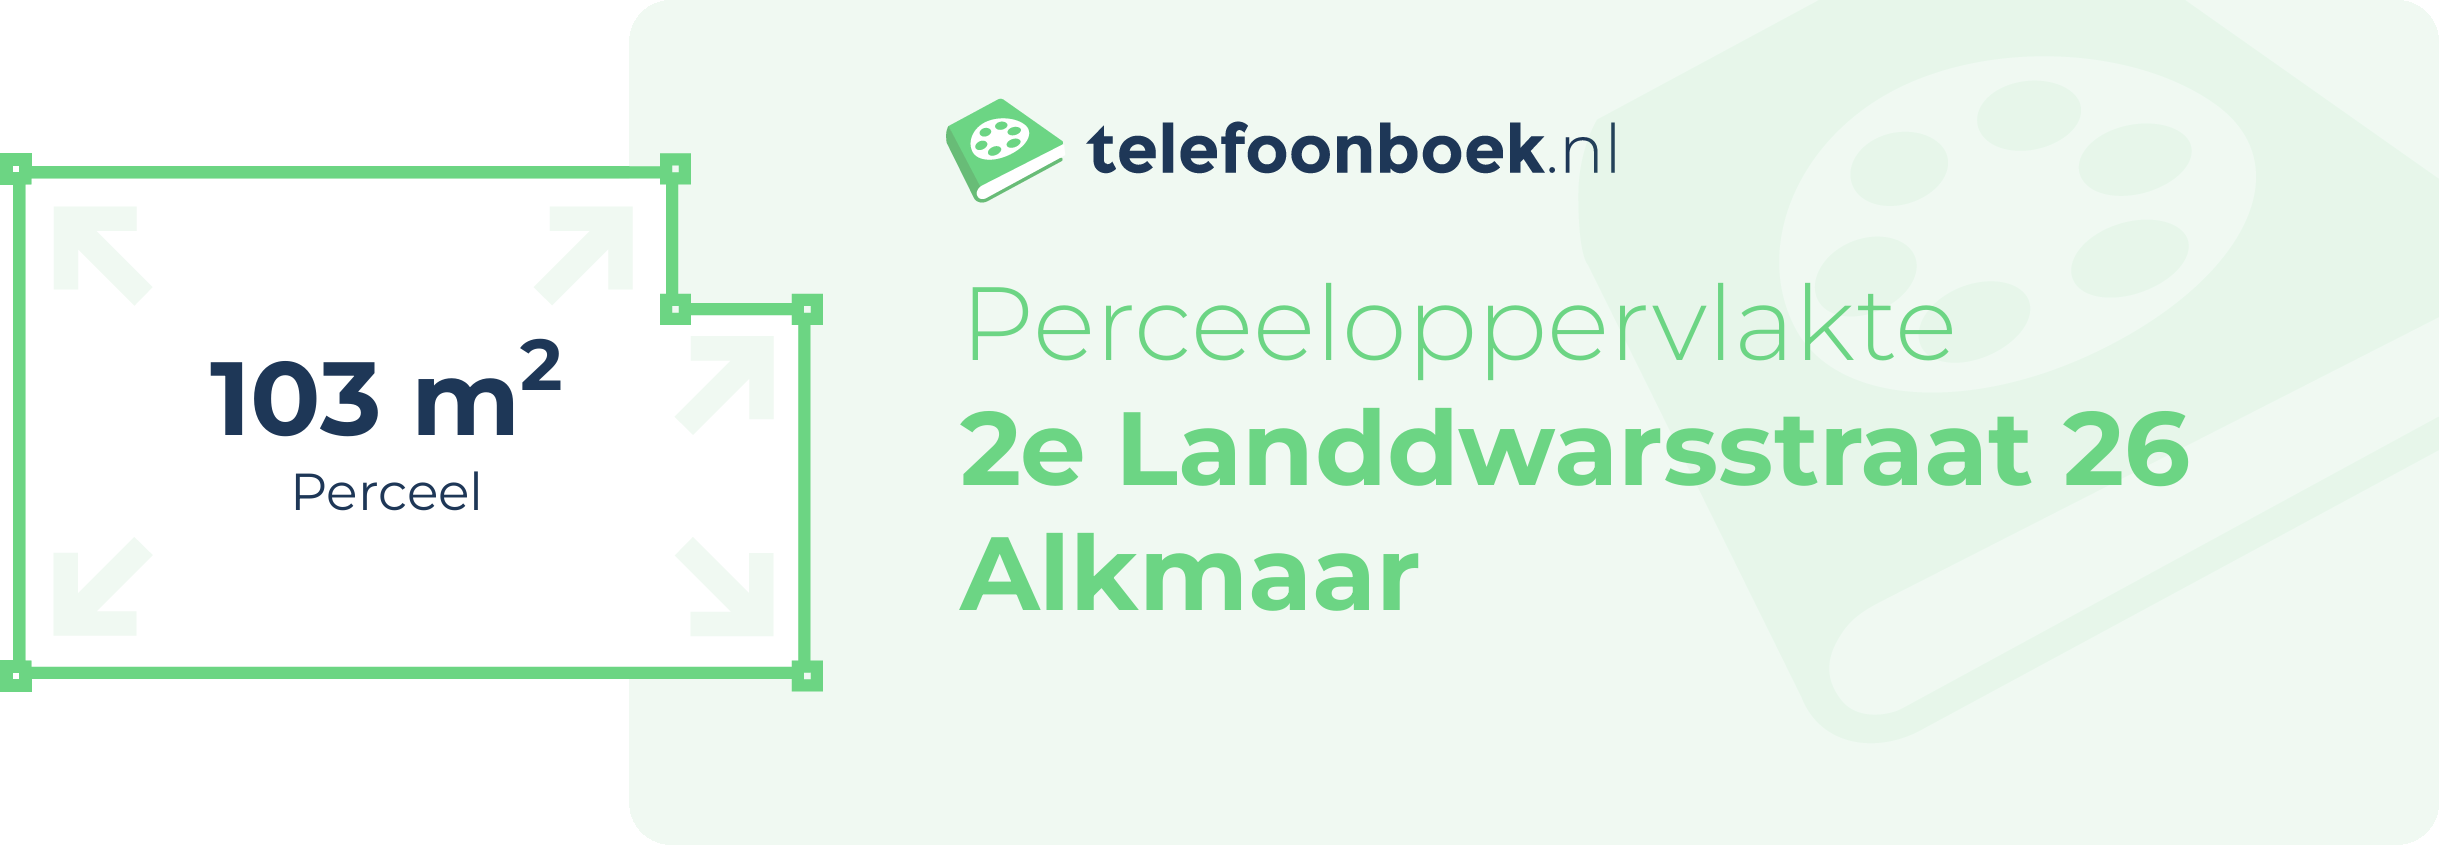 Perceeloppervlakte 2e Landdwarsstraat 26 Alkmaar